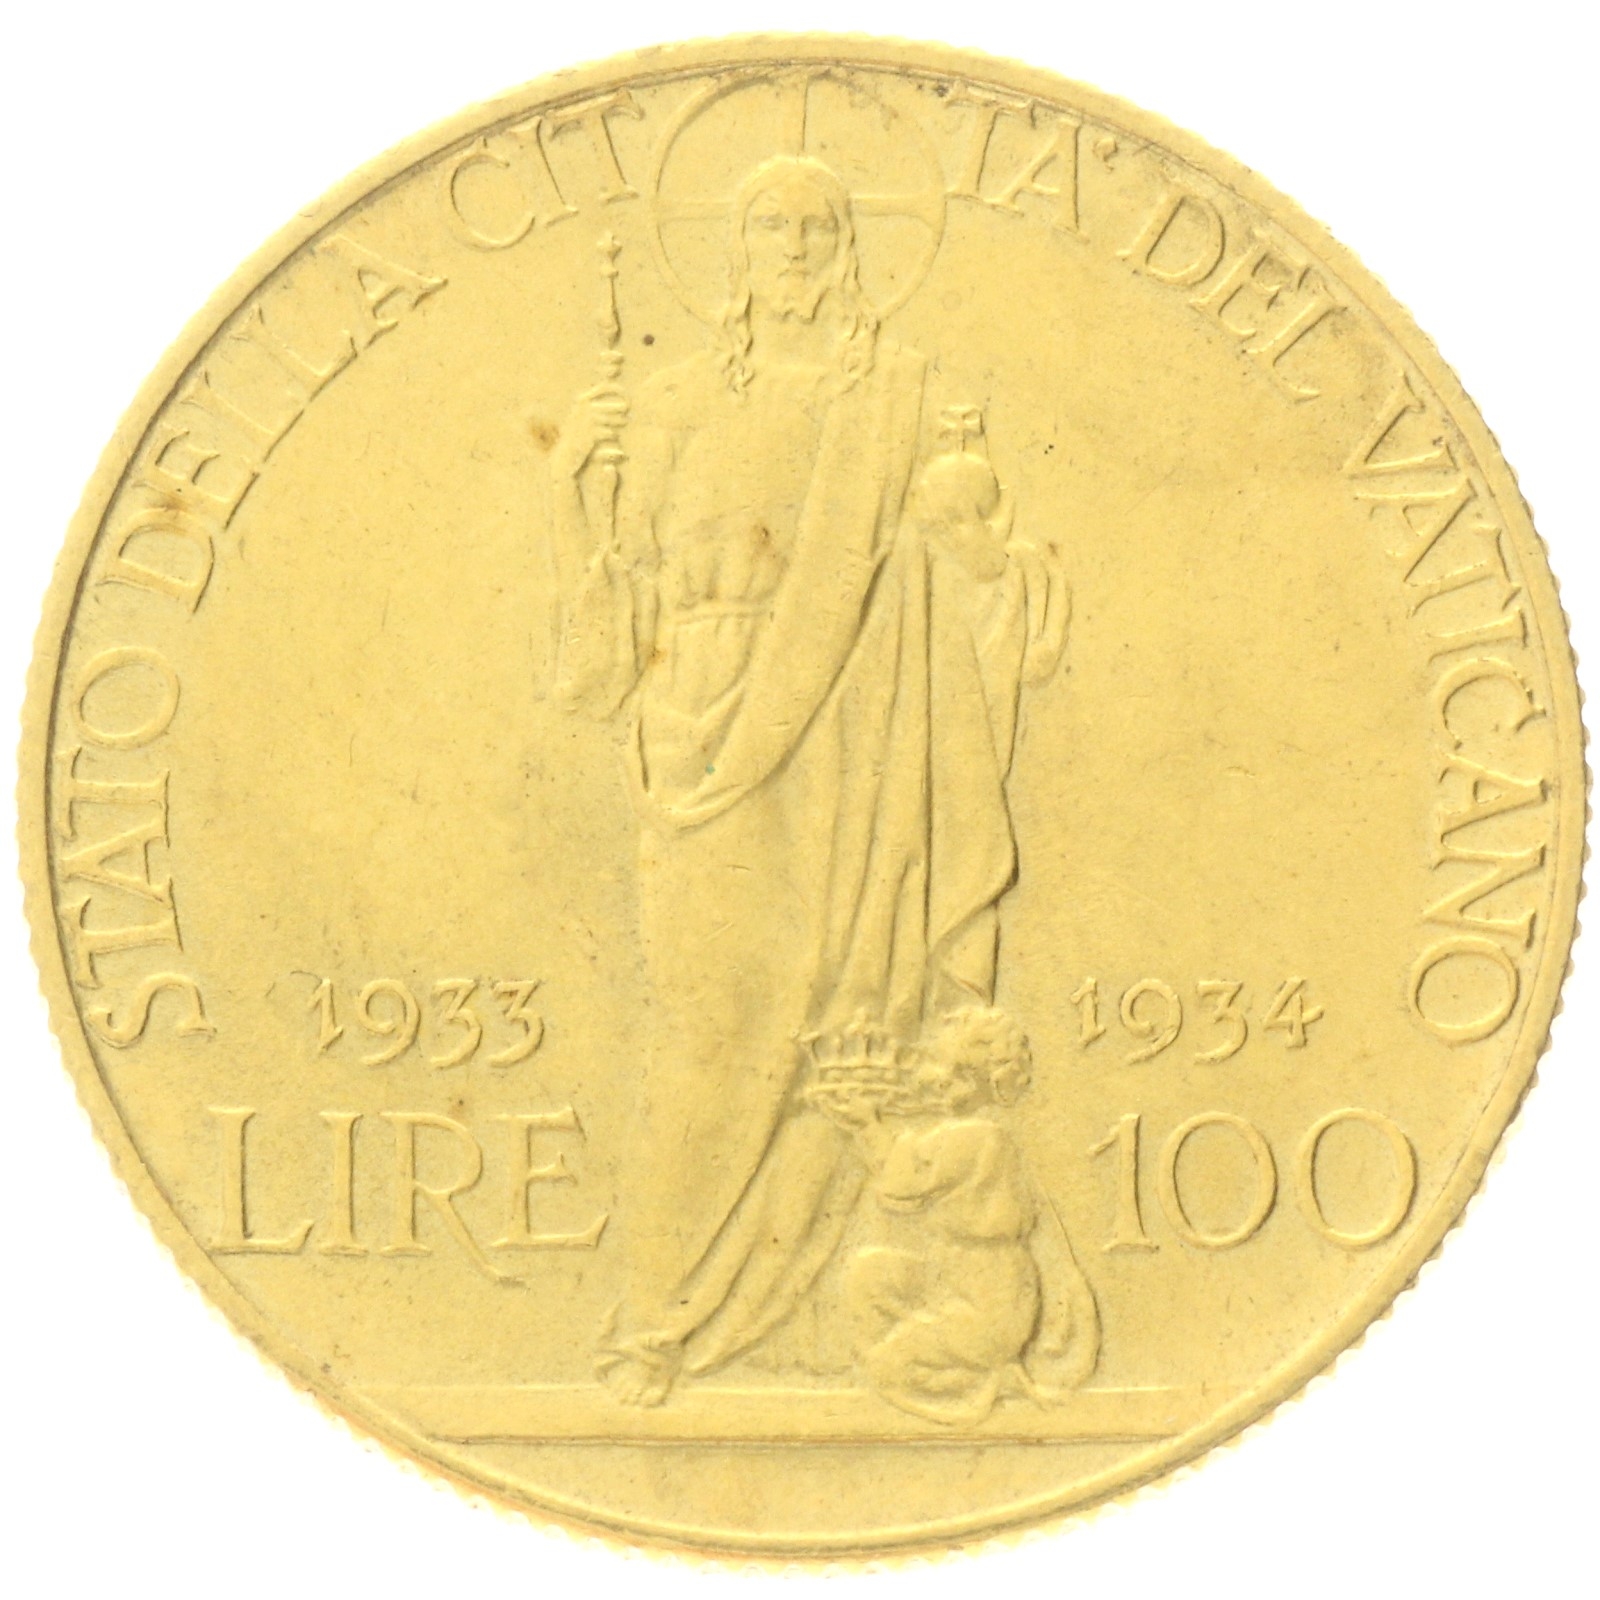 Vatican City - 100 Lire - 1933 - Pivs XI - Jubilee 